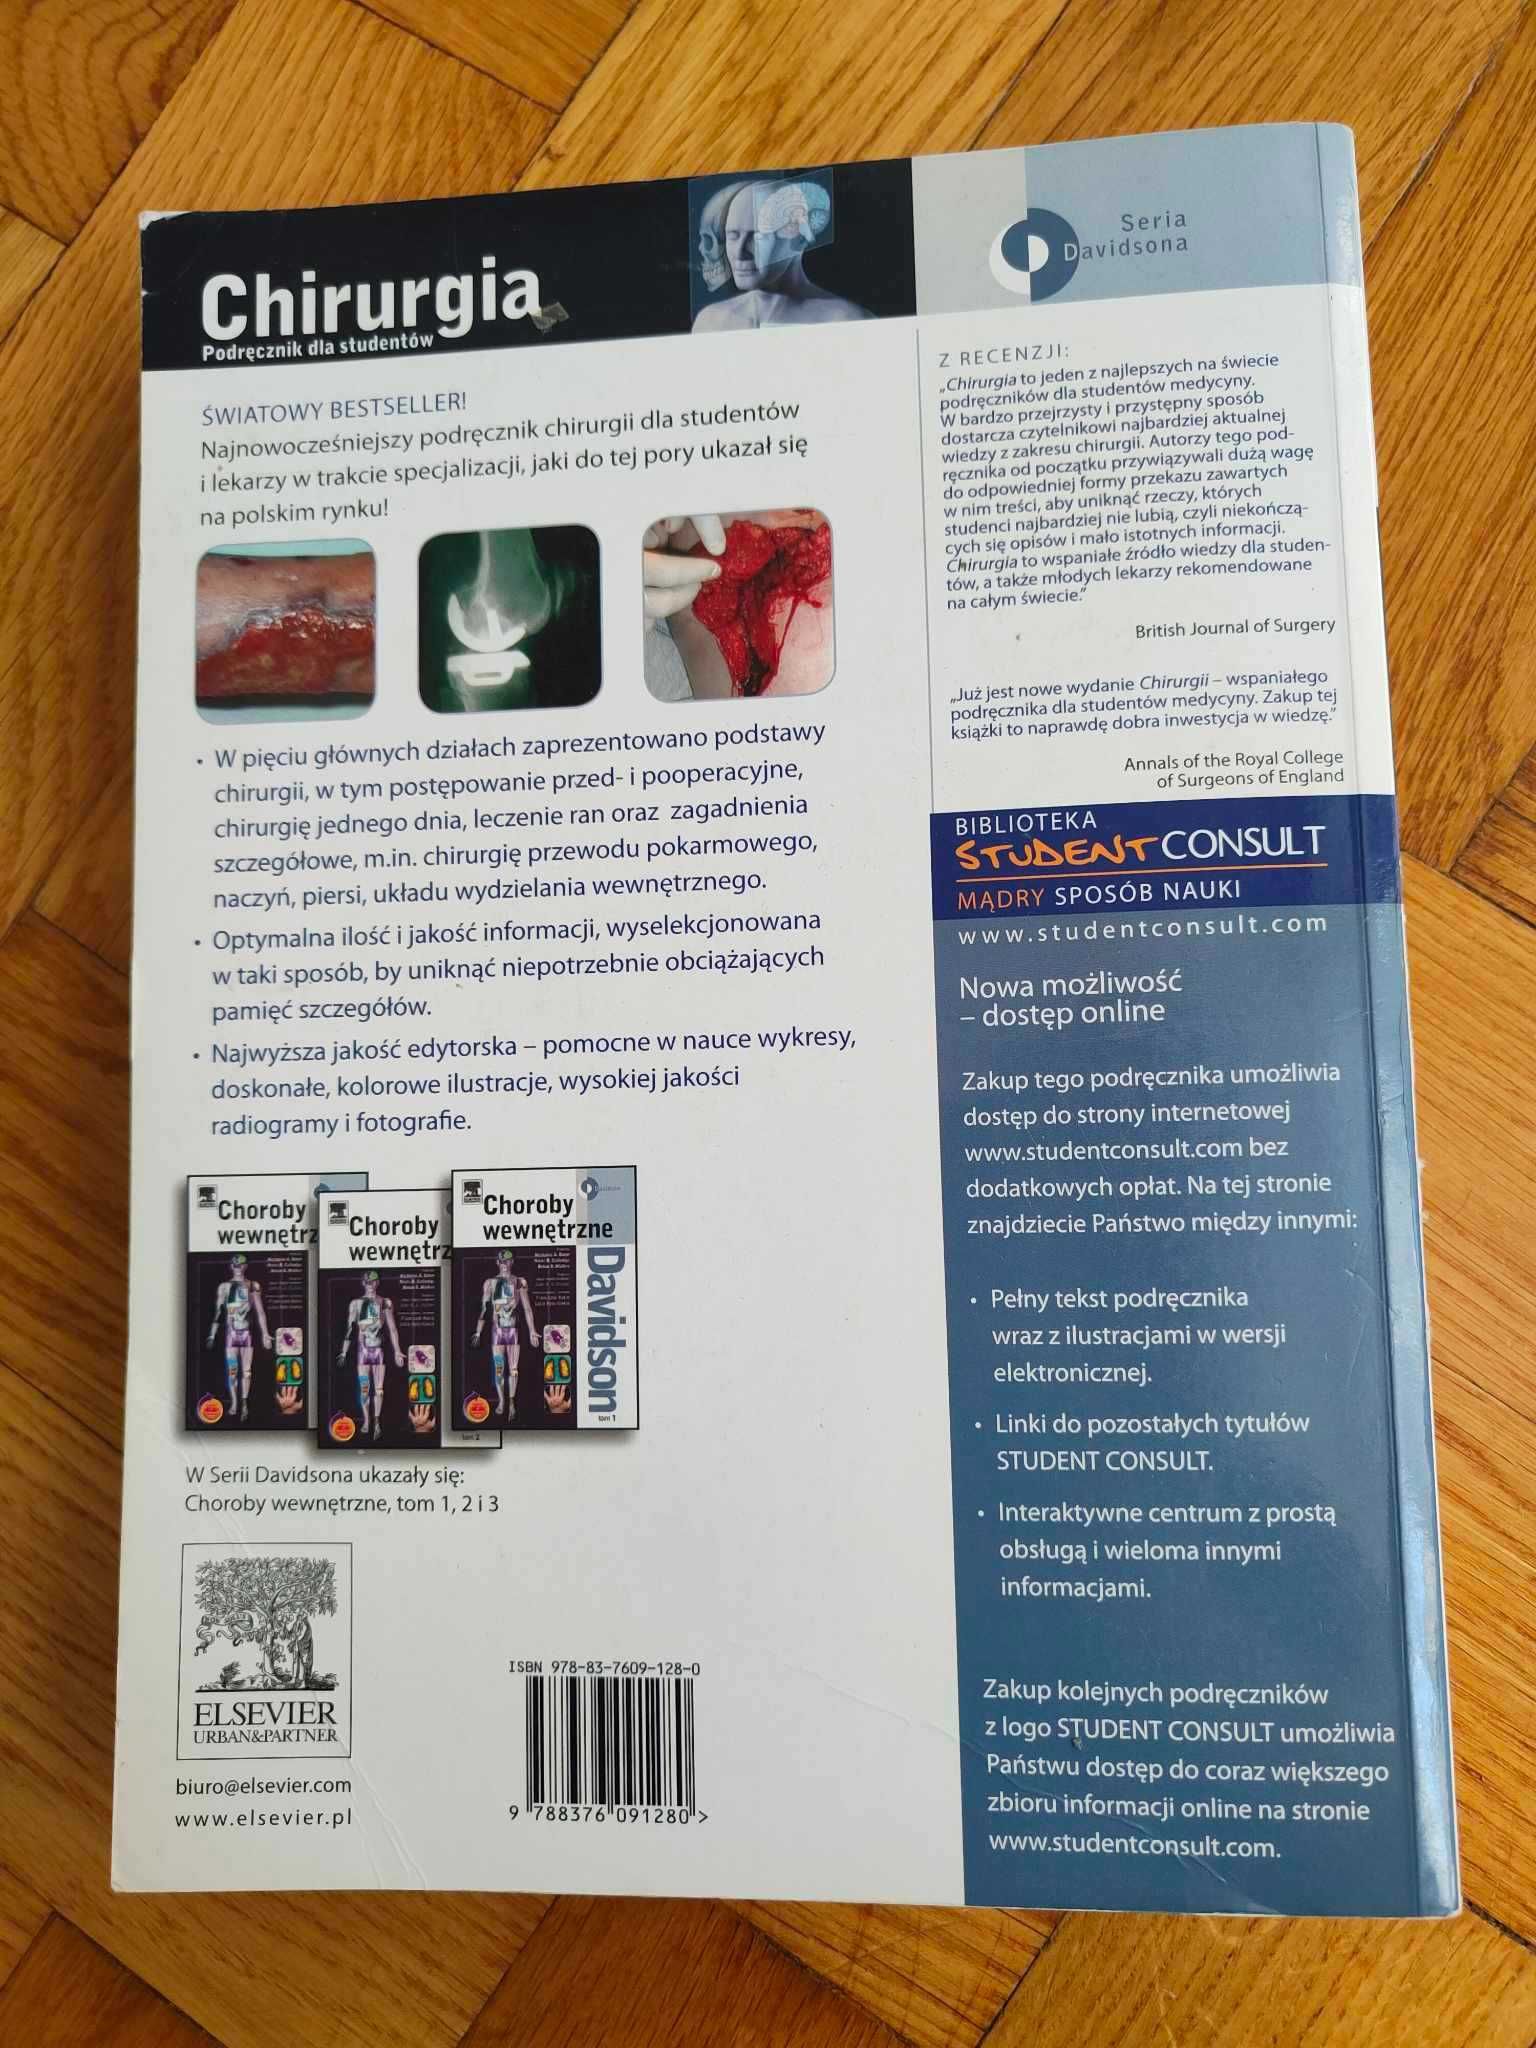 CHIRURGIA, podręcznik dla studentów, seria davidsona